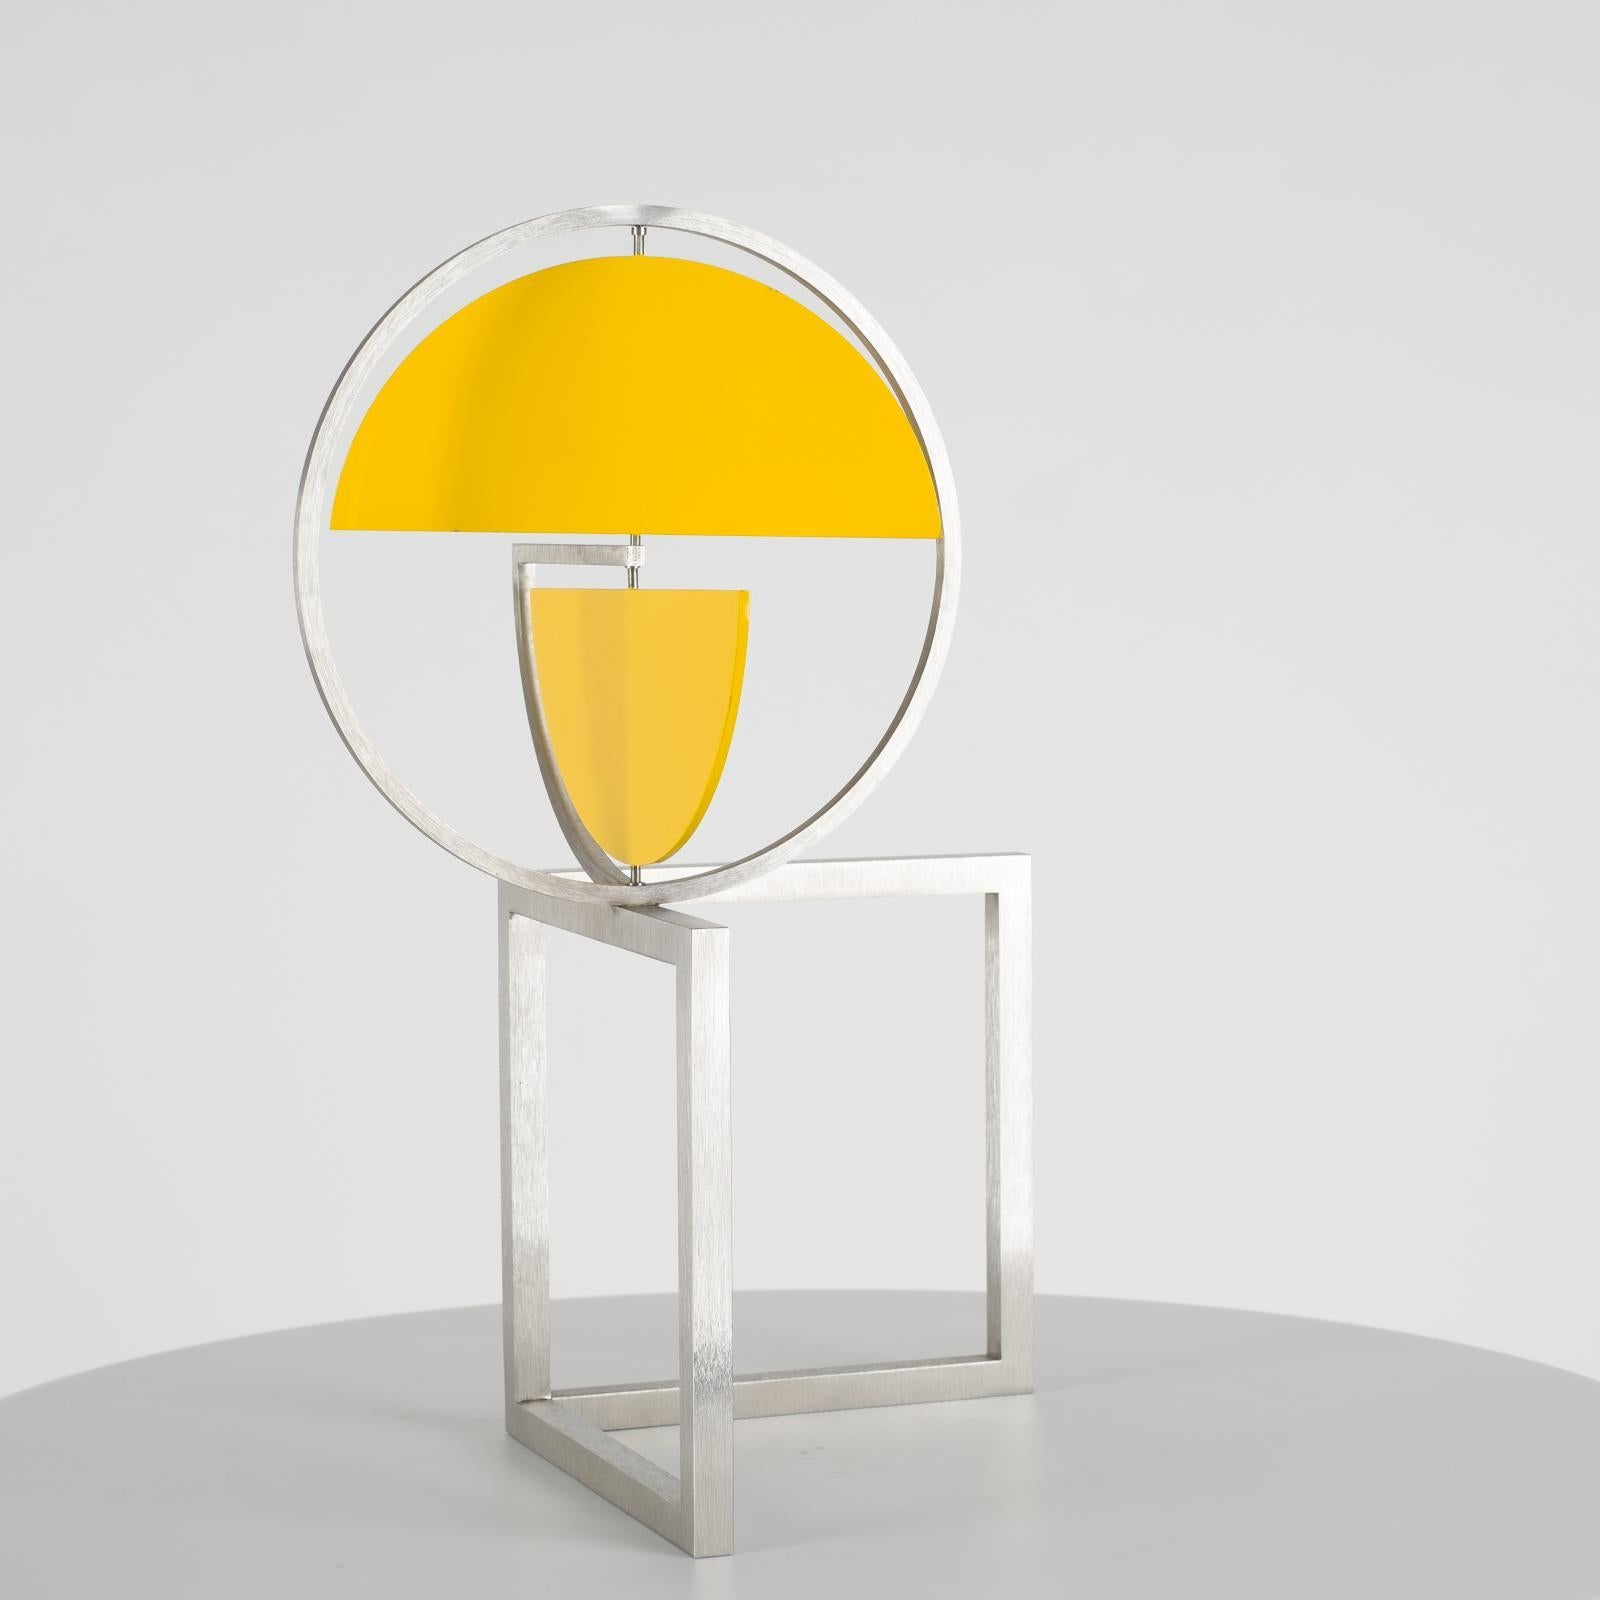 Gelbe Scheibenscheiben auf zwei Quadraten, kinetische Skulptur – Sculpture von Roger Phillips